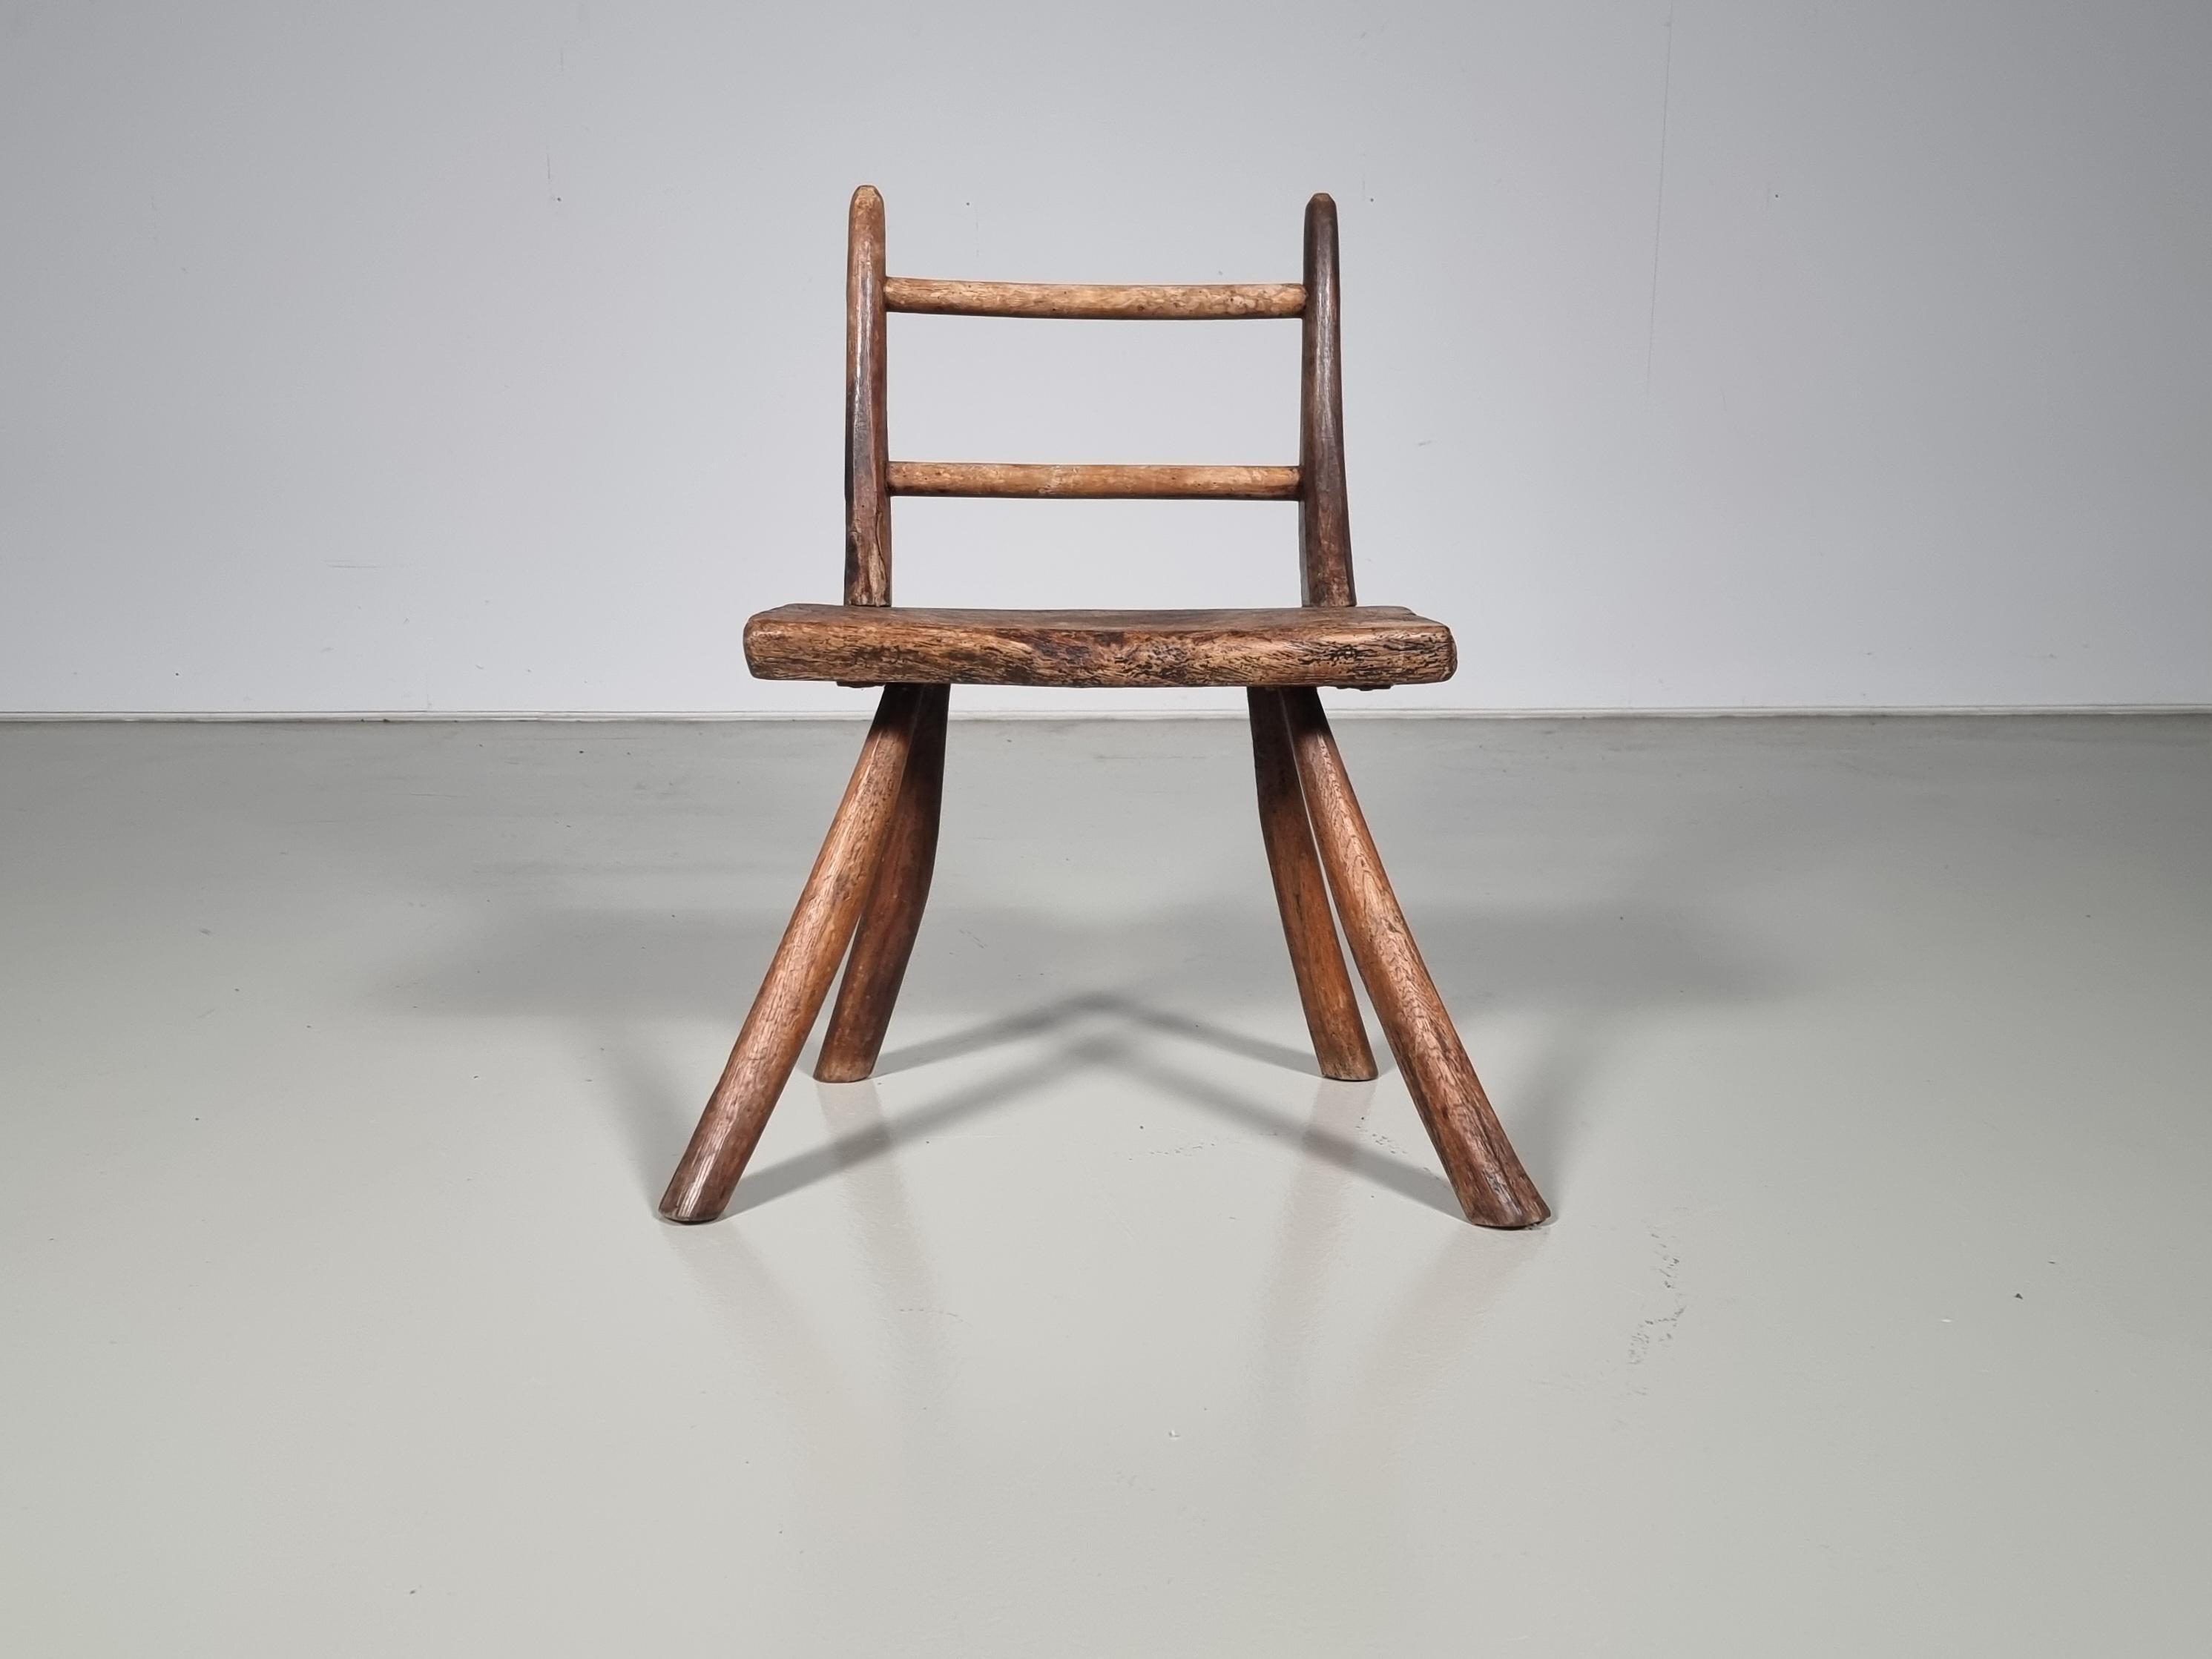 Chaise d'appoint rustique française du début du 20e siècle, construite en bois dur foncé courbé. Conception/One simple. Une chaise unique, parfaite pour tout espace à la recherche d'un décor et d'un intérieur Wabi Sabi.

Cette chaise a été sourcée